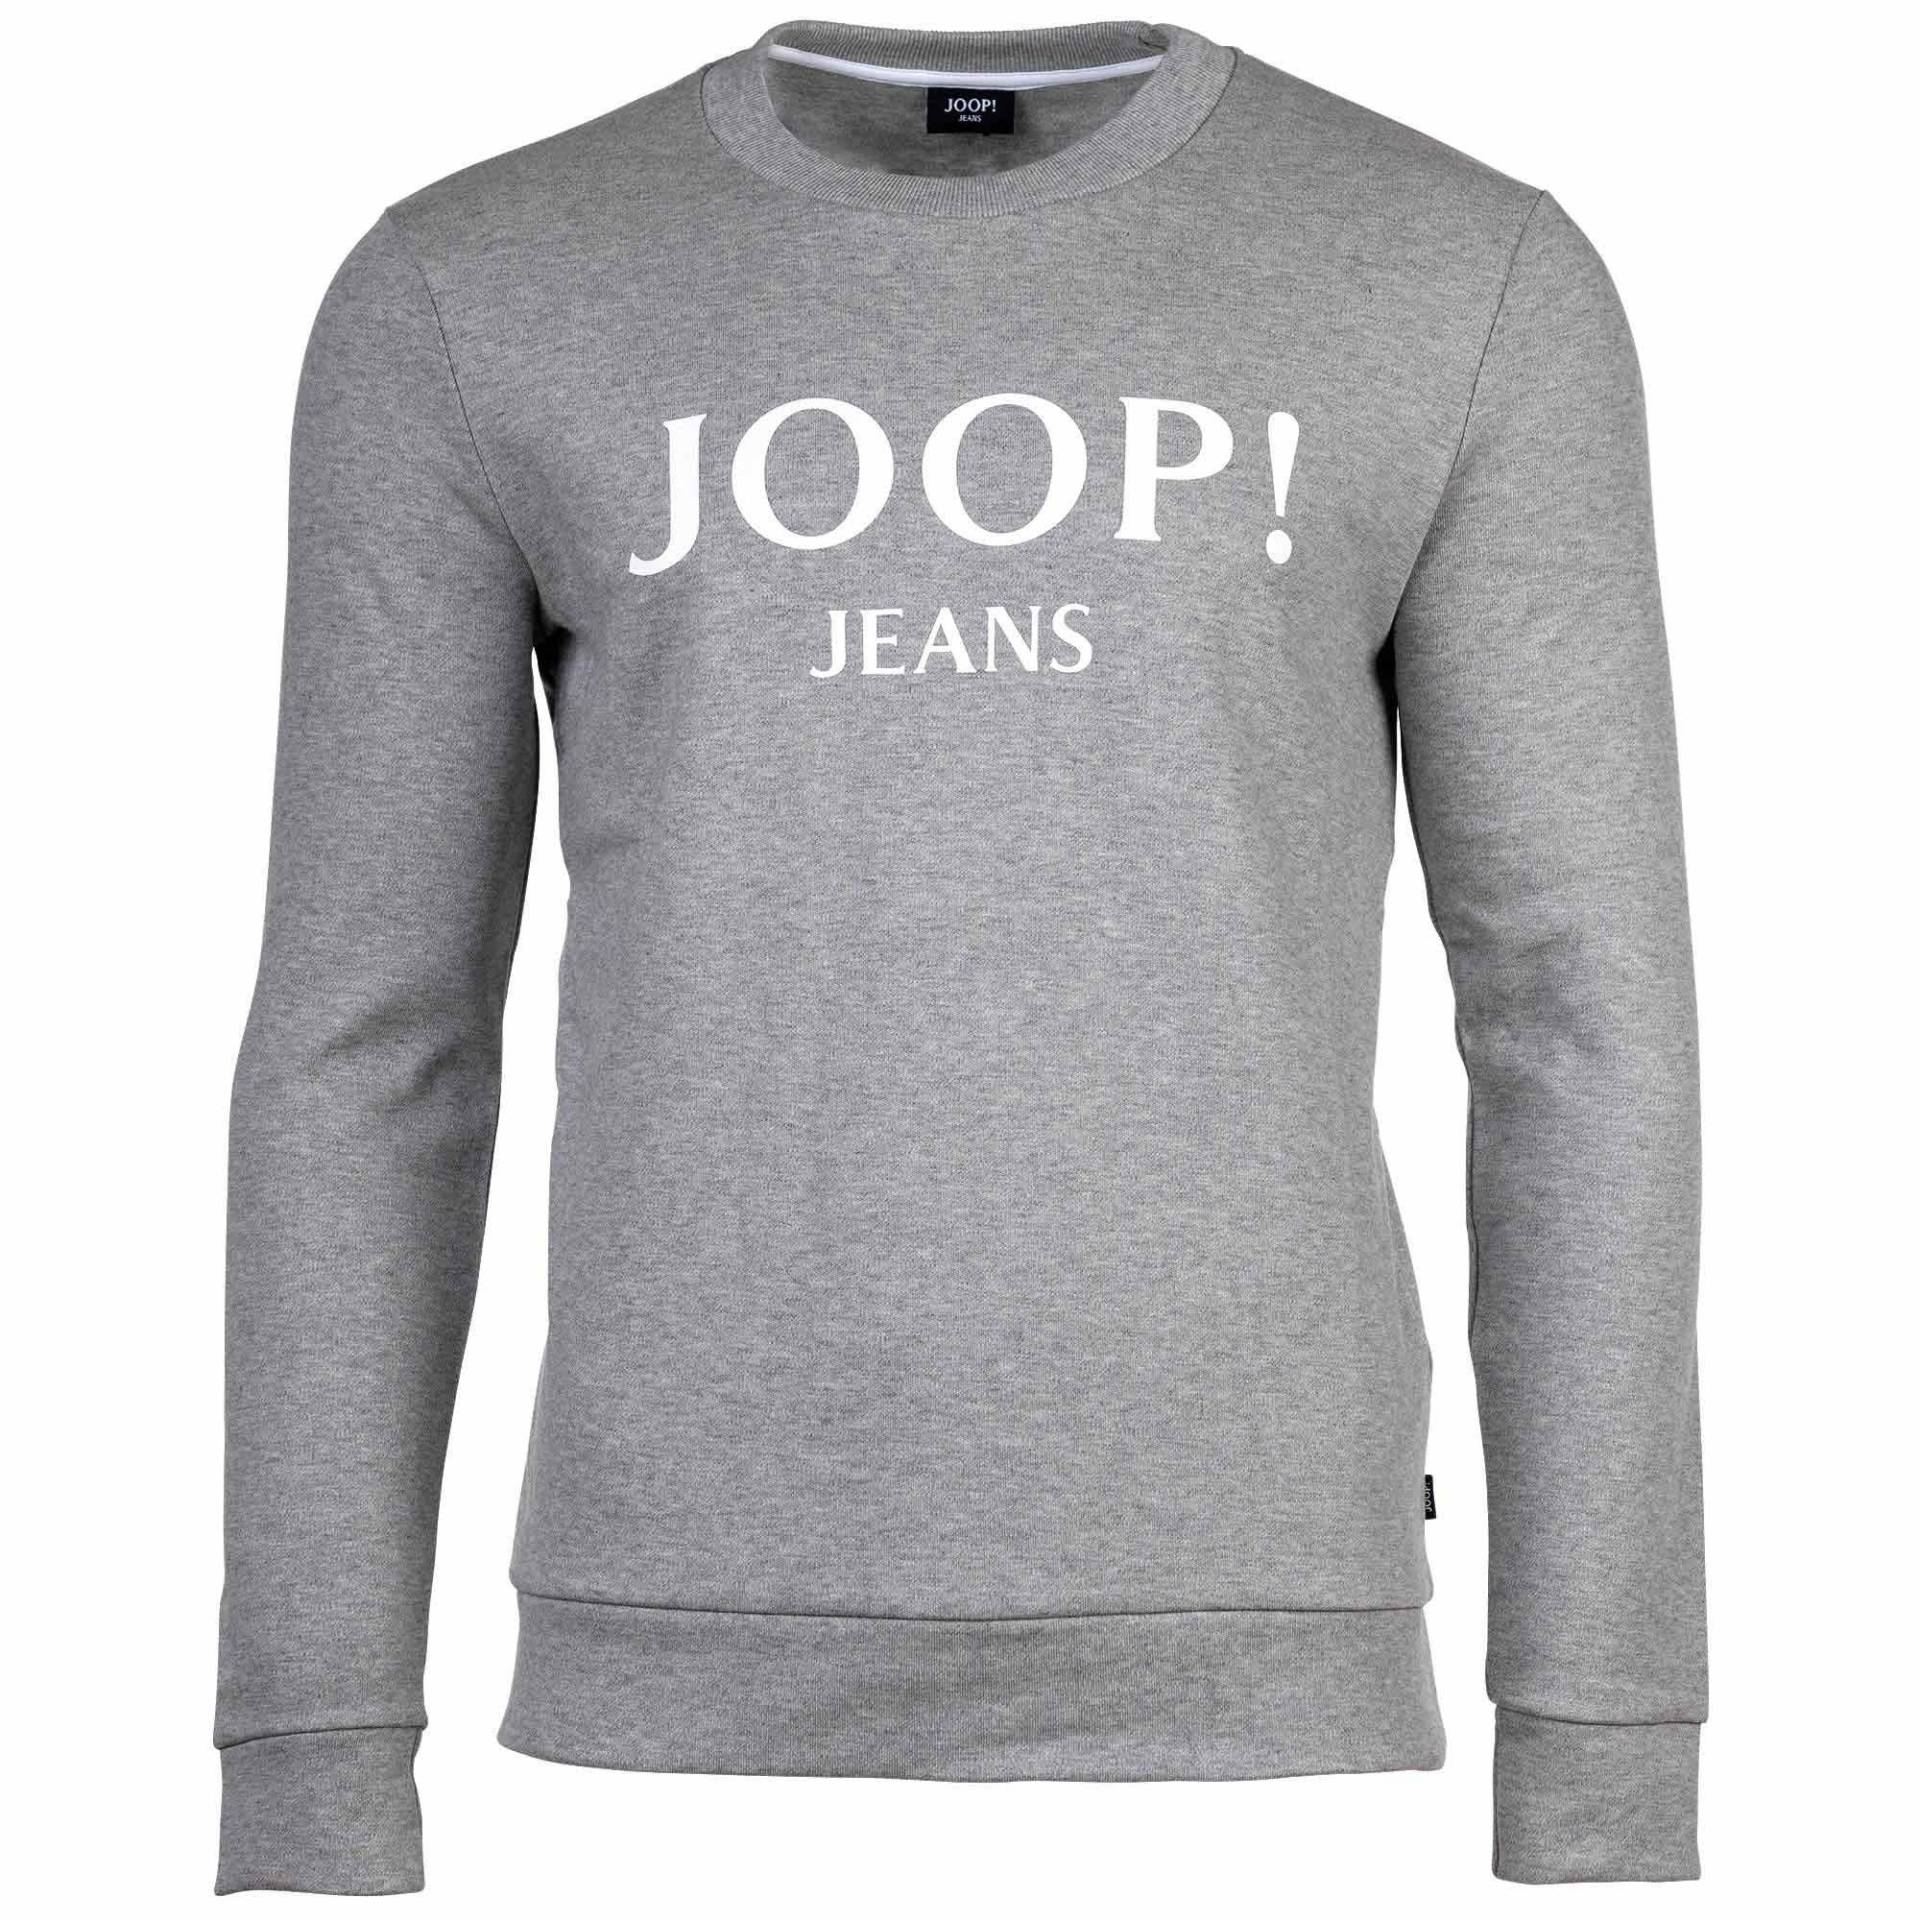 Sweatshirt Bequem Sitzend-jjj-alfred Herren Taubengrau XL von Joop Jeans